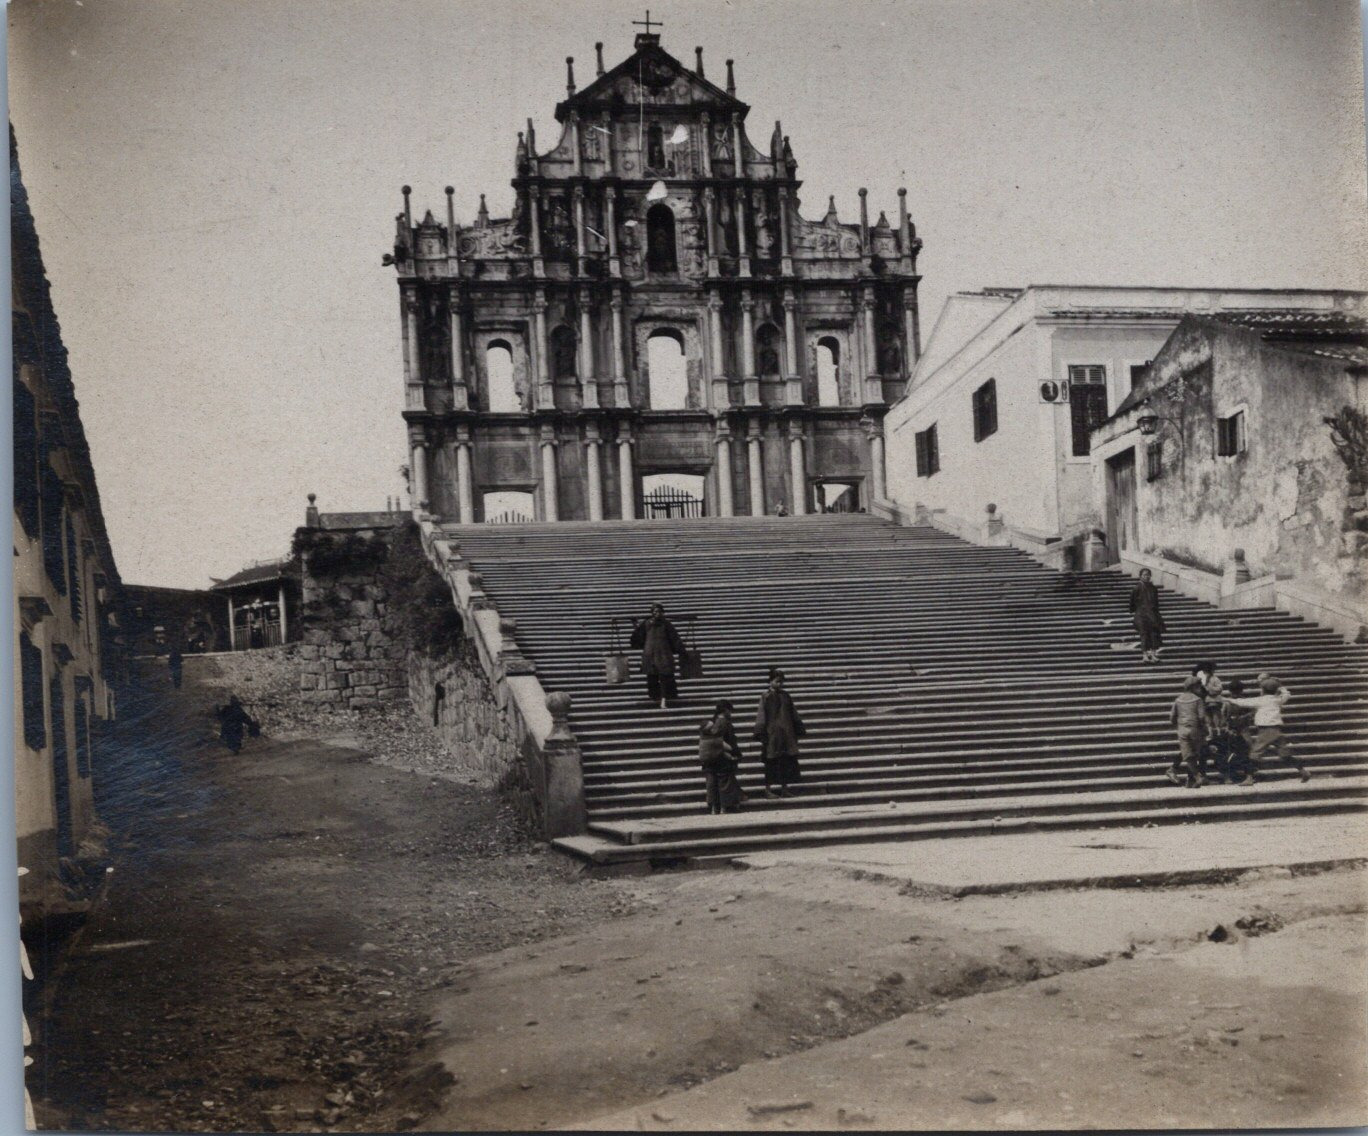 Macau, Ruins of St. Paul, Vintage Print, ca.1900 Vintage Print D�